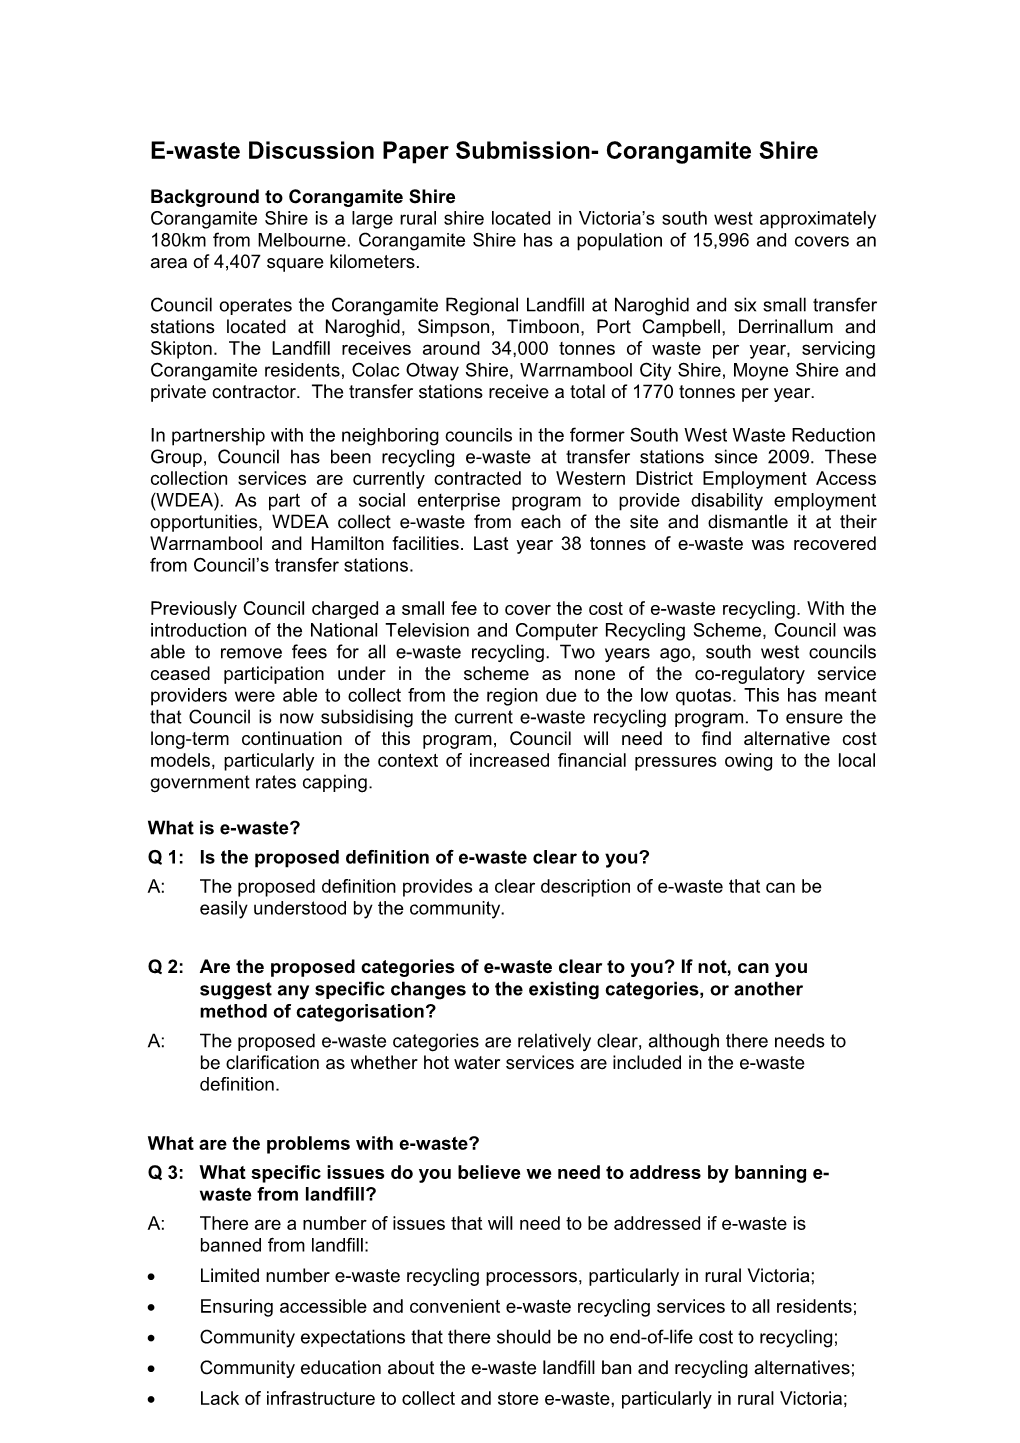 E-Waste Discussion Paper Submission- Corangamite Shire